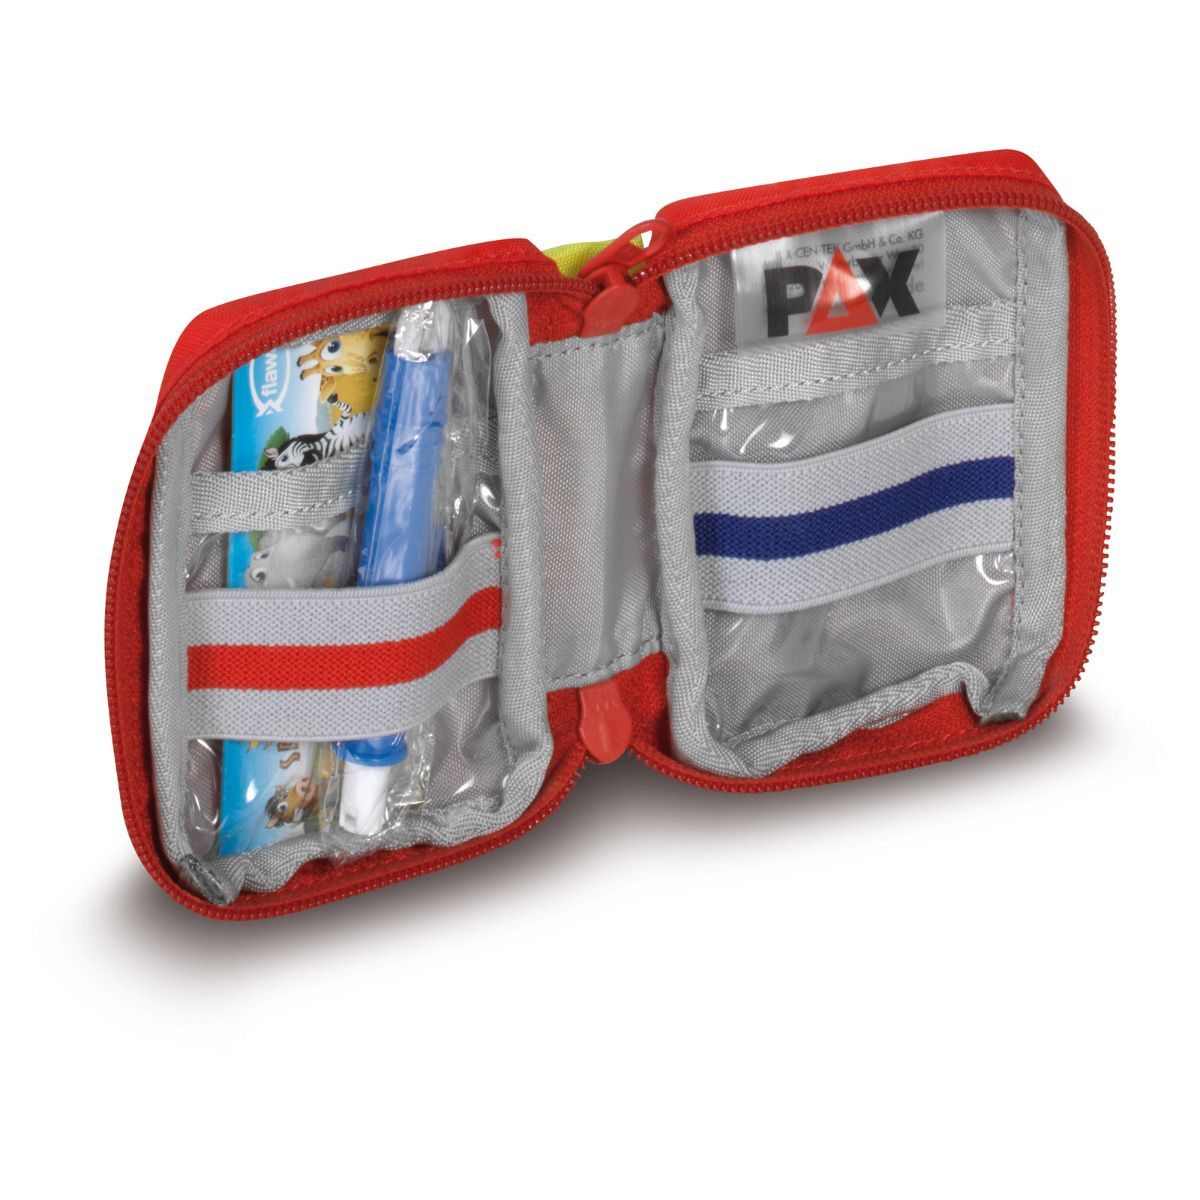 Pax Erste Hilfe Tasche XS